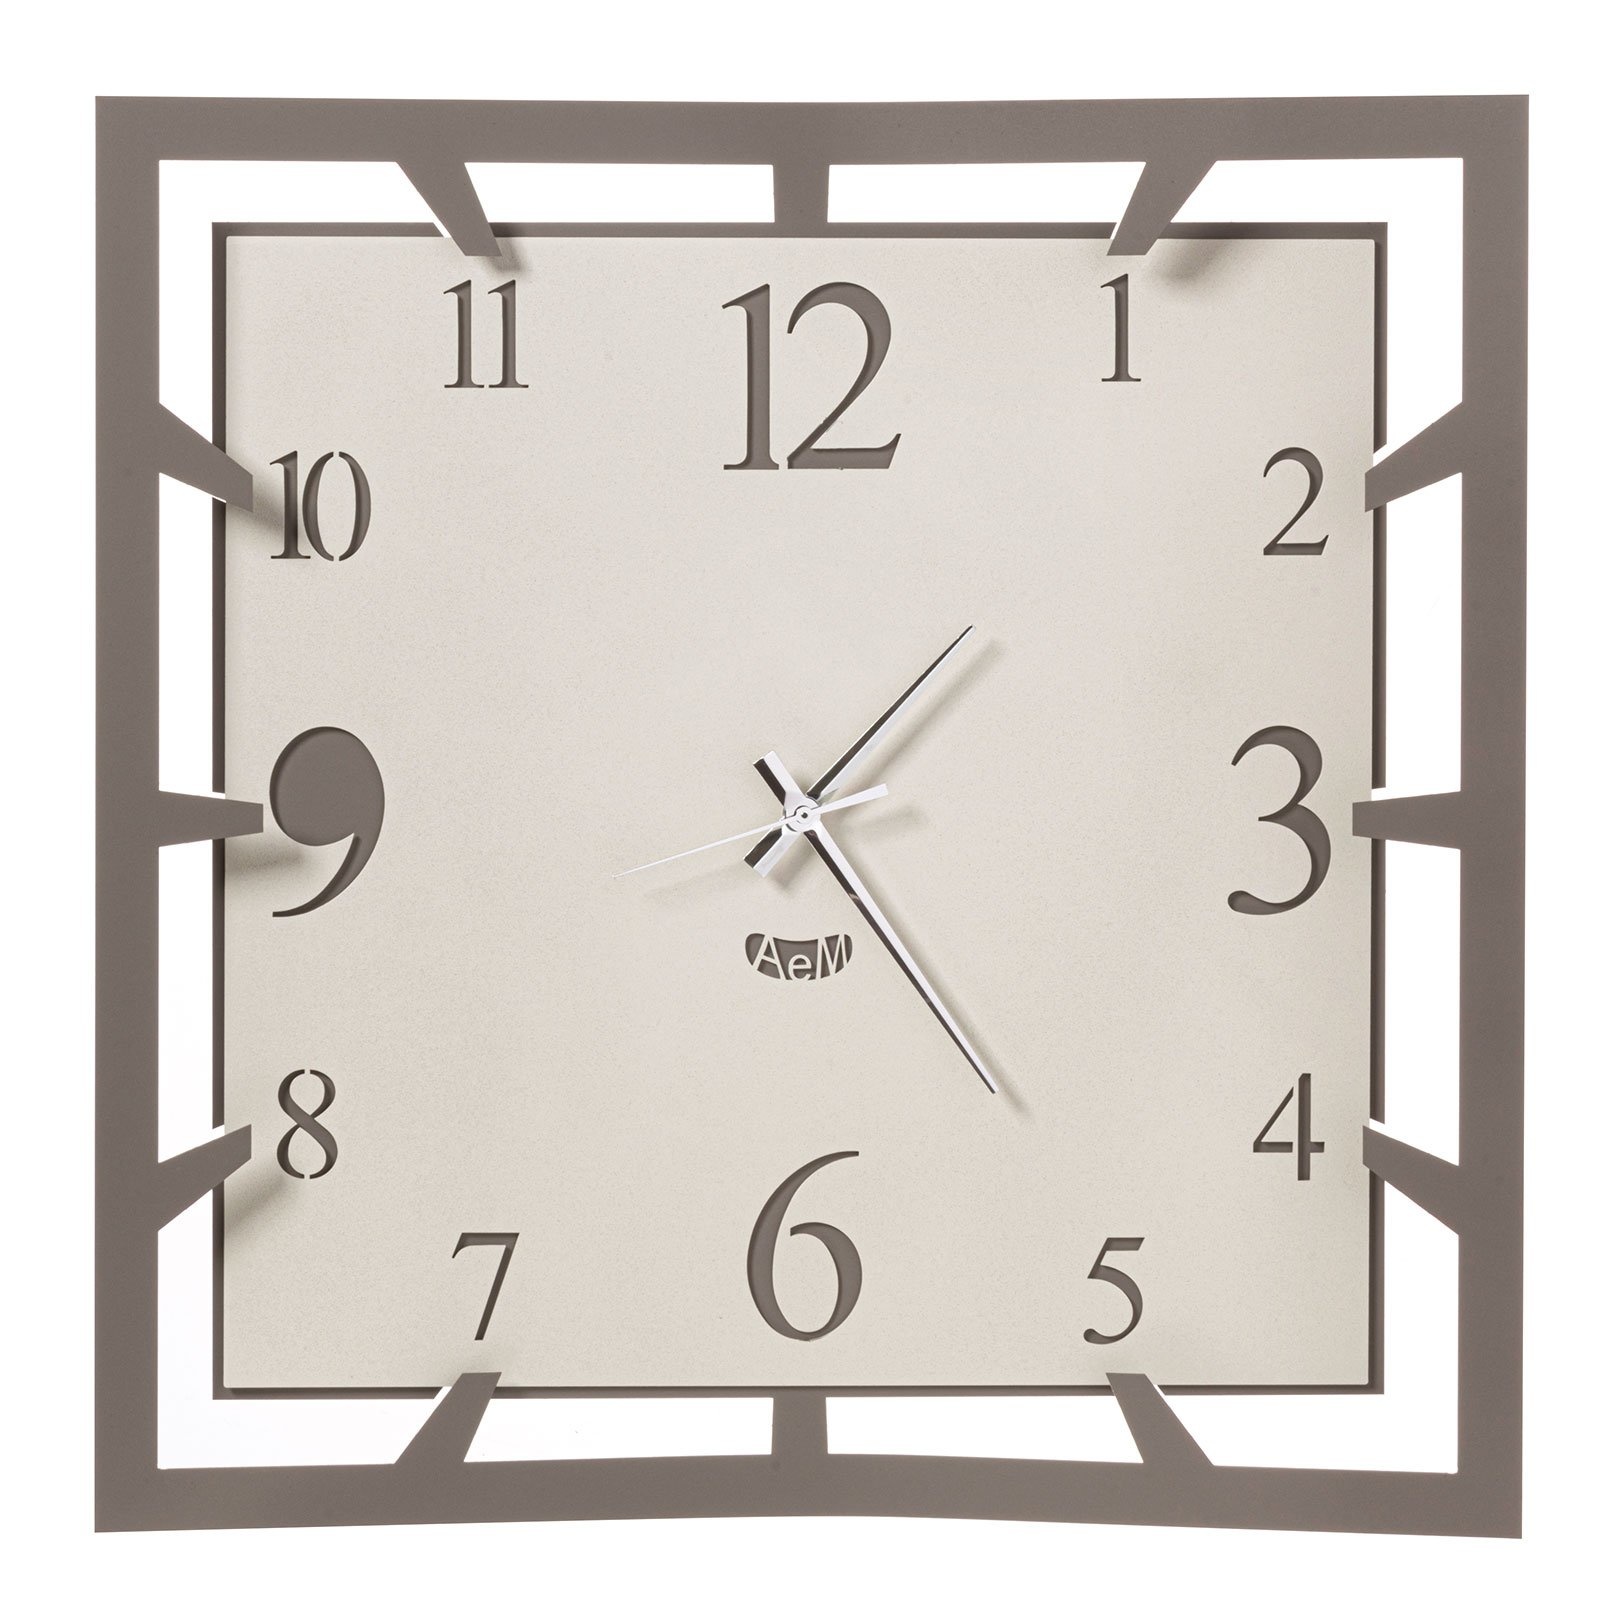 Arti & Mestieri Design - Wall clock Italian design large square black/white - 50 cm